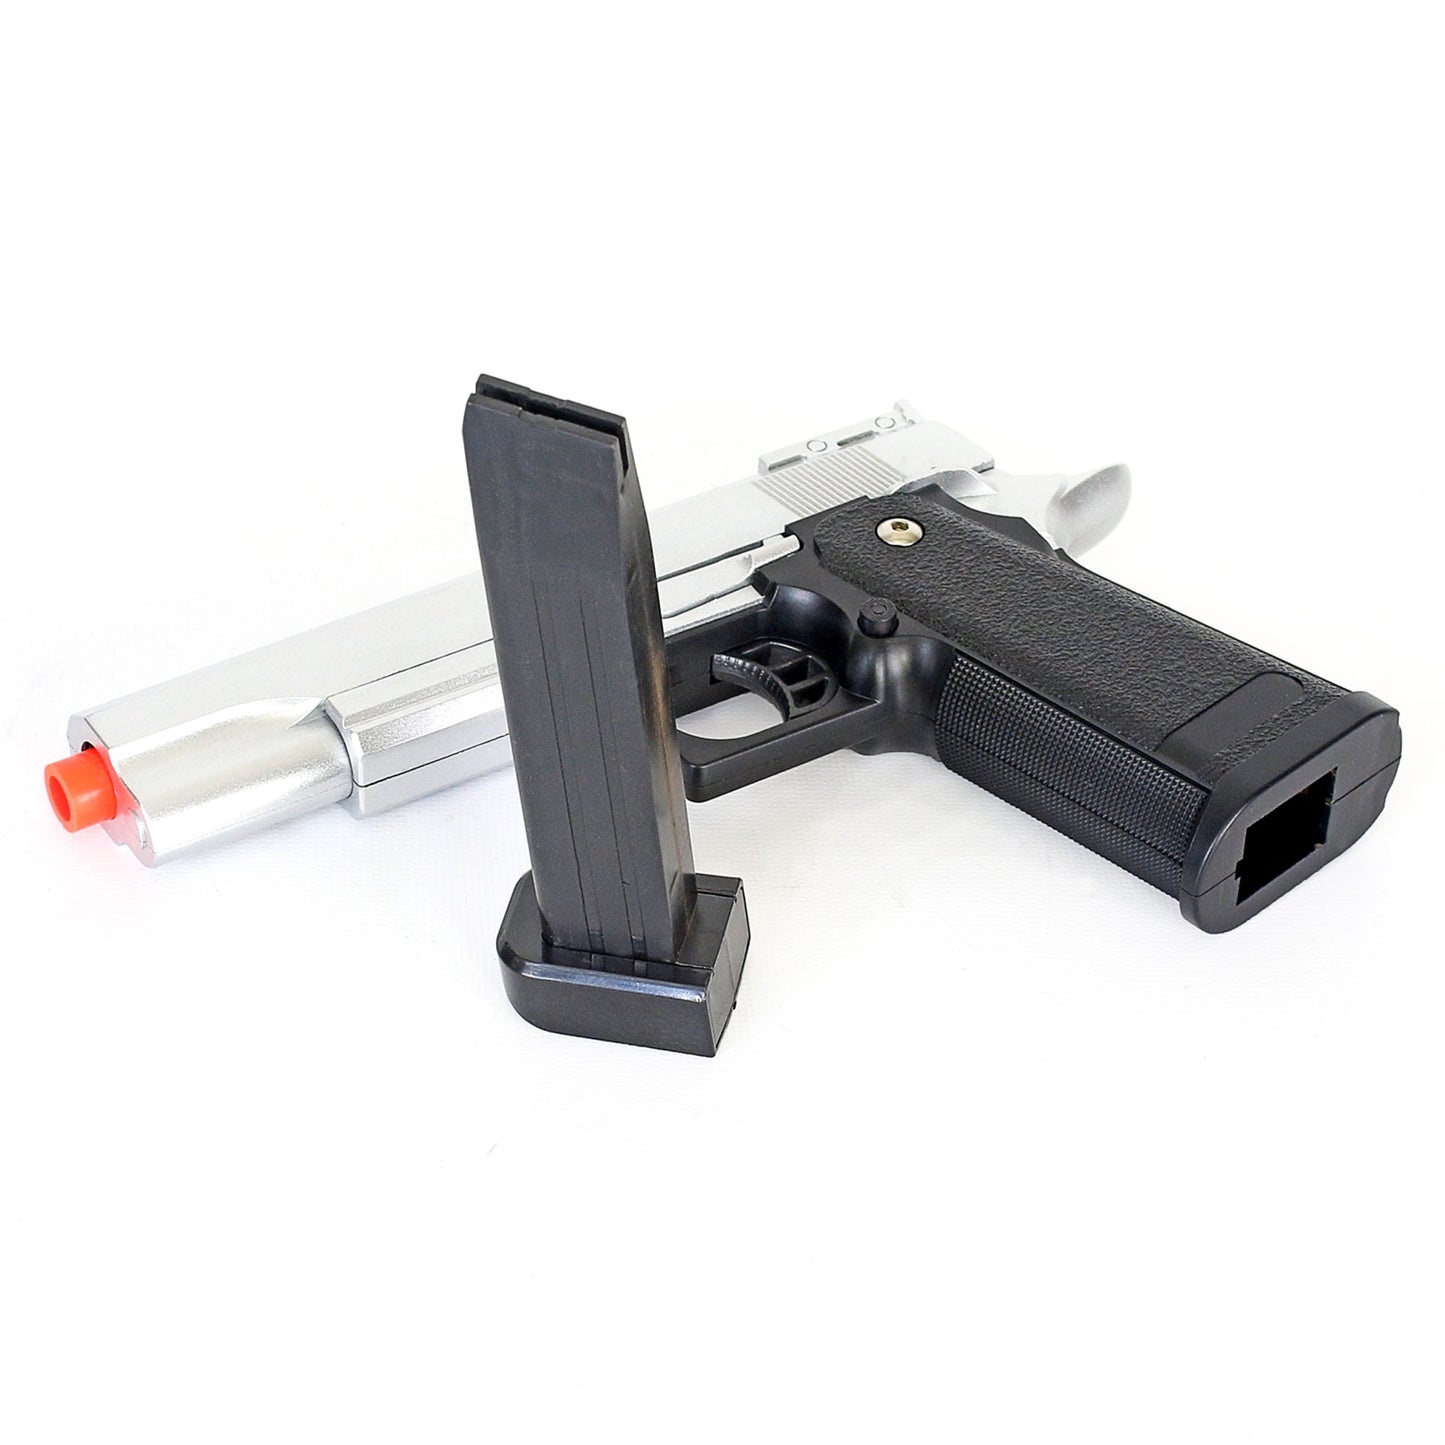 Magazine Clip for BBTac G6 Airsoft Gun Pistol